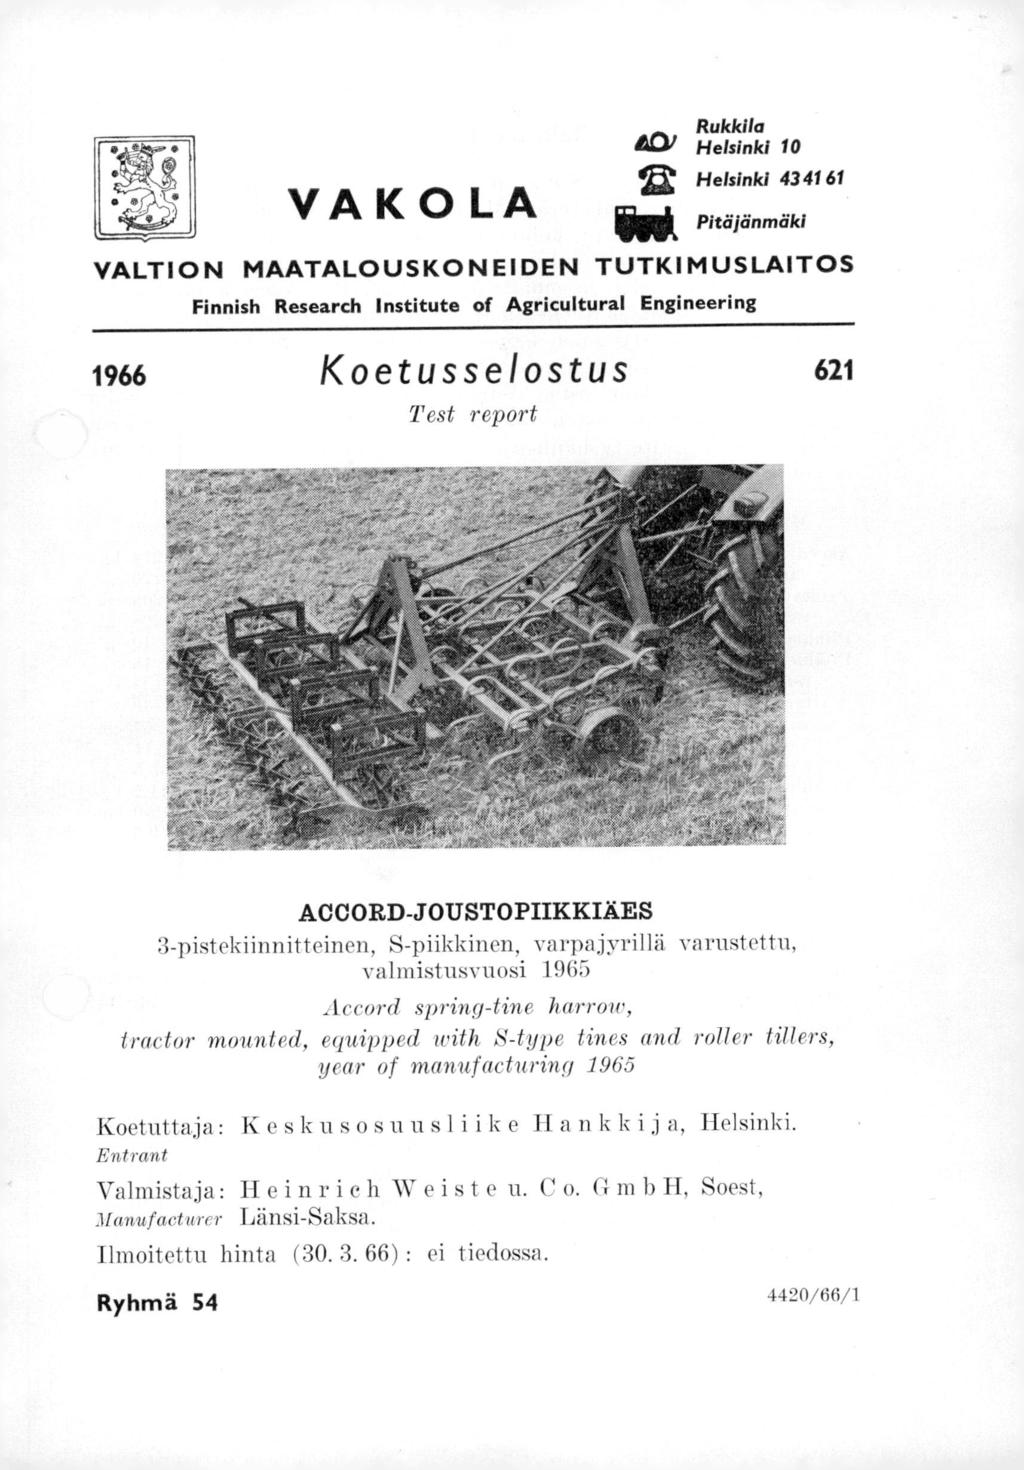 VAKOLA Rukkila 401 Helsinki 10 12 Helsinki 43 41 61 Pitäjänmäki VALTION MAATALOUSKONEIDEN TUTKIMUSLAITOS Finnish Research Institute of Agricultural Engineering 1966 Koetusselostus 621 T est report